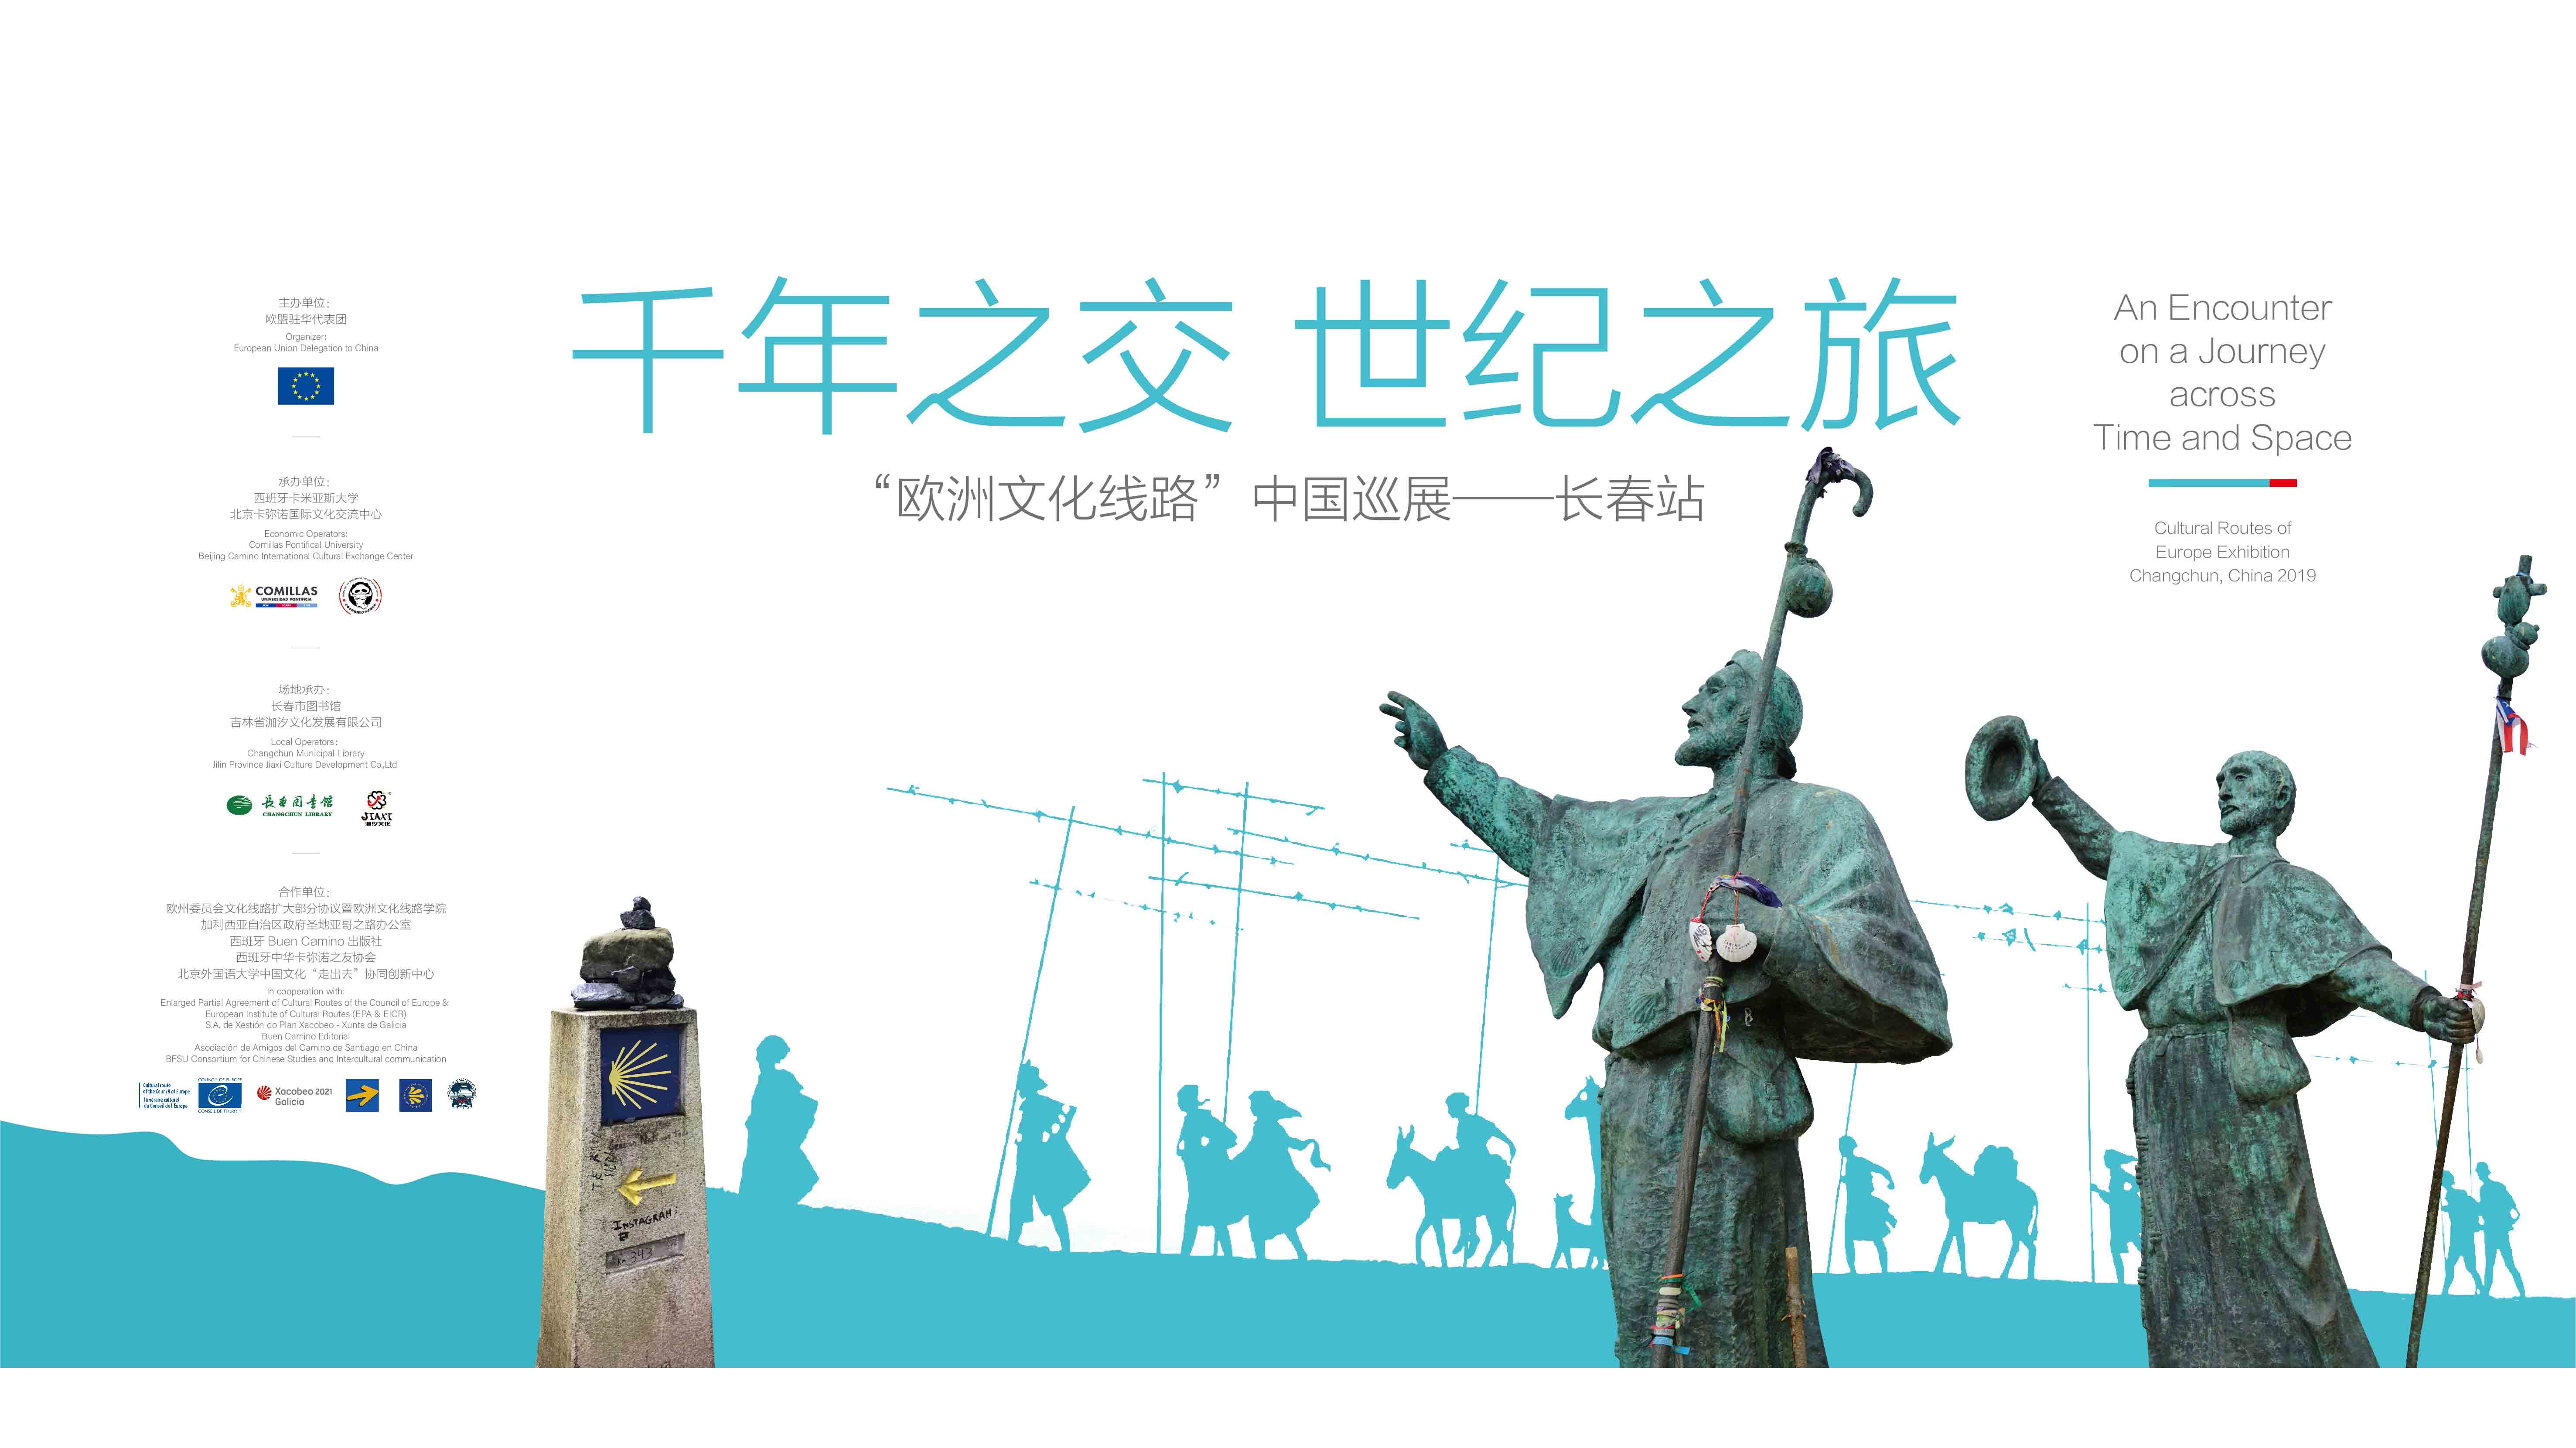 Délégation en Chine de Union européenne : « Rencontre en voyage dans le temps et l'espace - Exposition sur les Itinéraires Culturels de l'Europe » (Pékin, Chine)